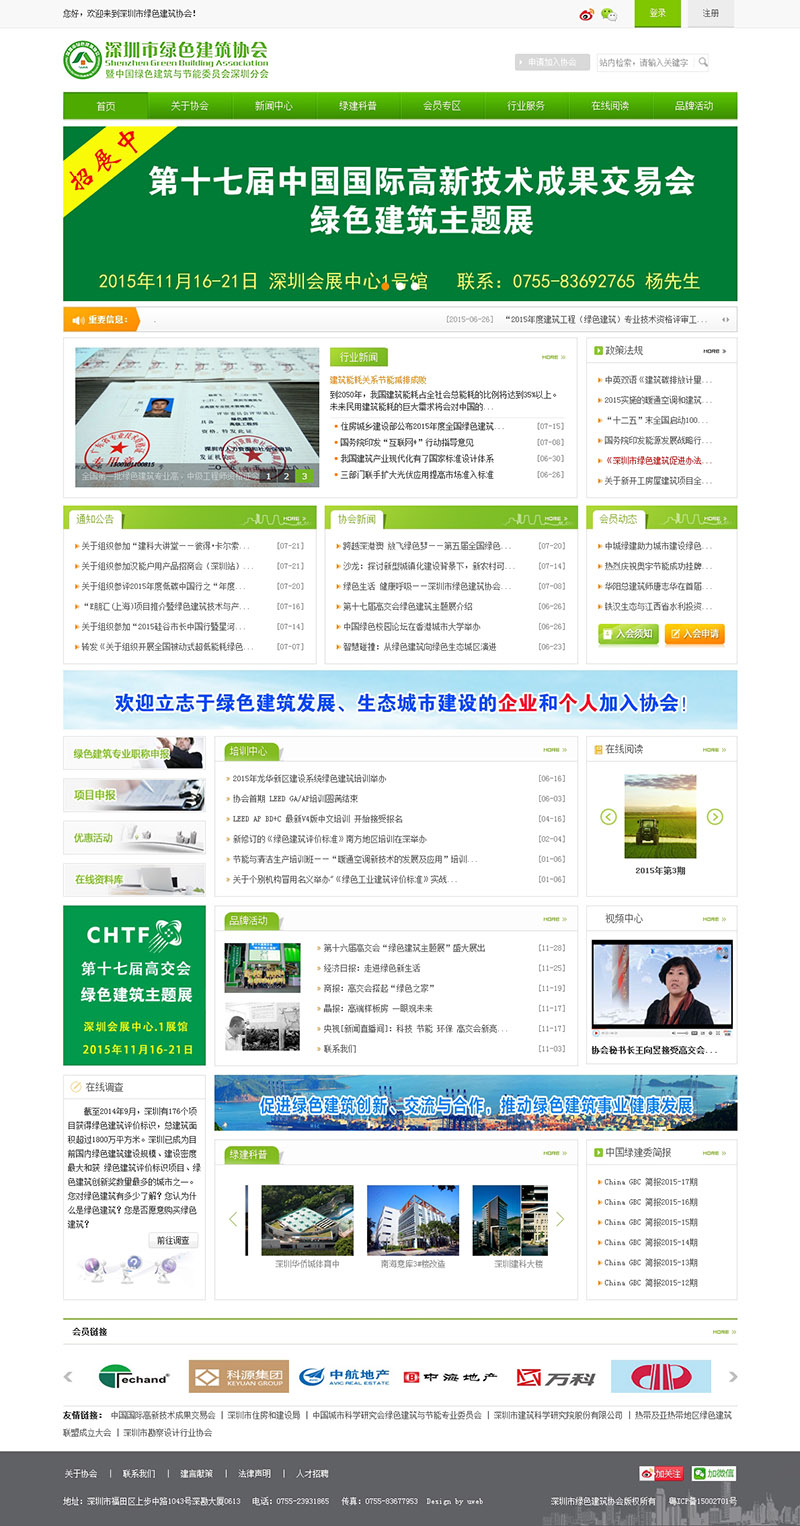 深圳市绿色建筑协助网站首页效果图